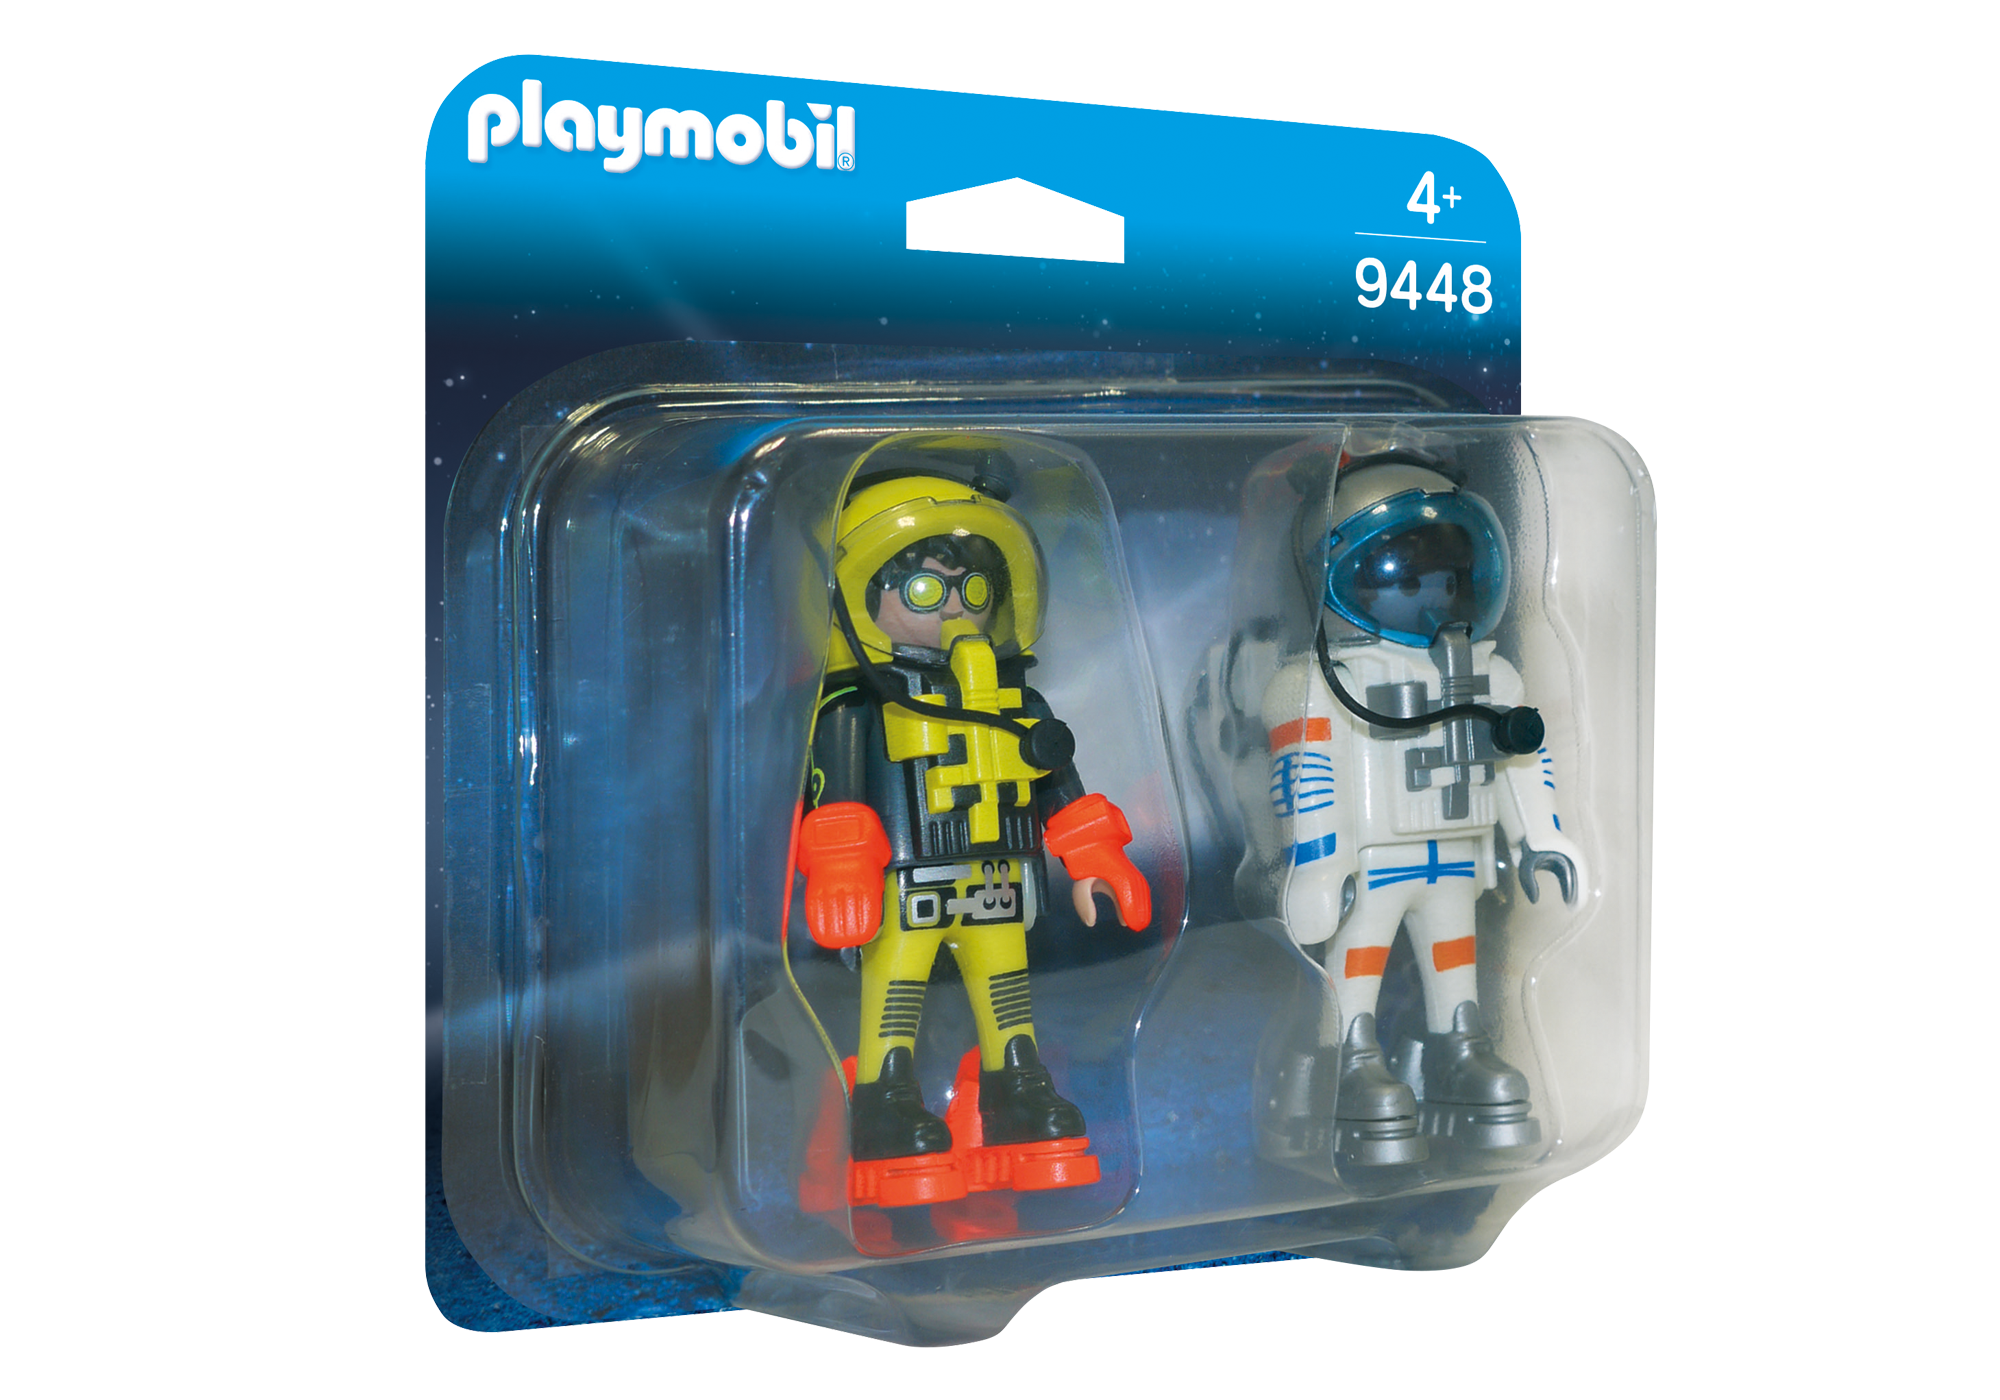 Playmobil Space 2018 9448_product_box_front?locale=de-DE,de,*&$pdp_product_main_xl$&strip=true